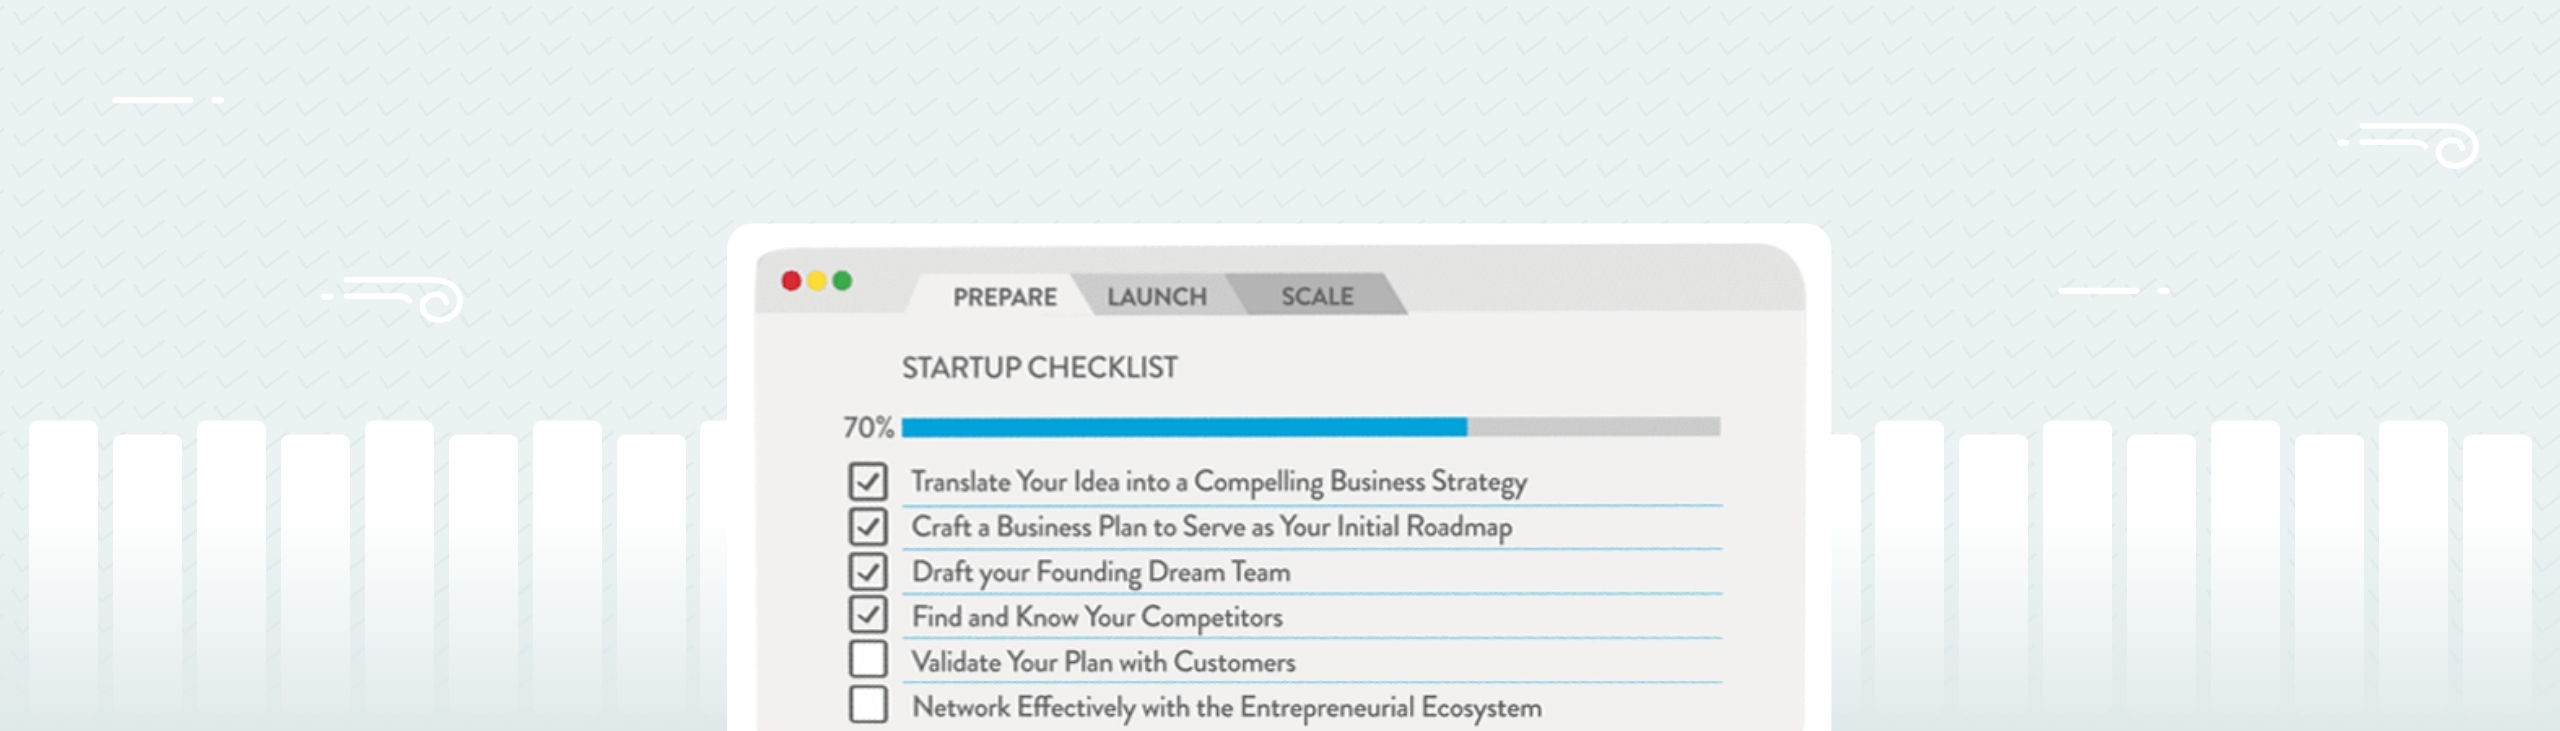 The Startup Checklist